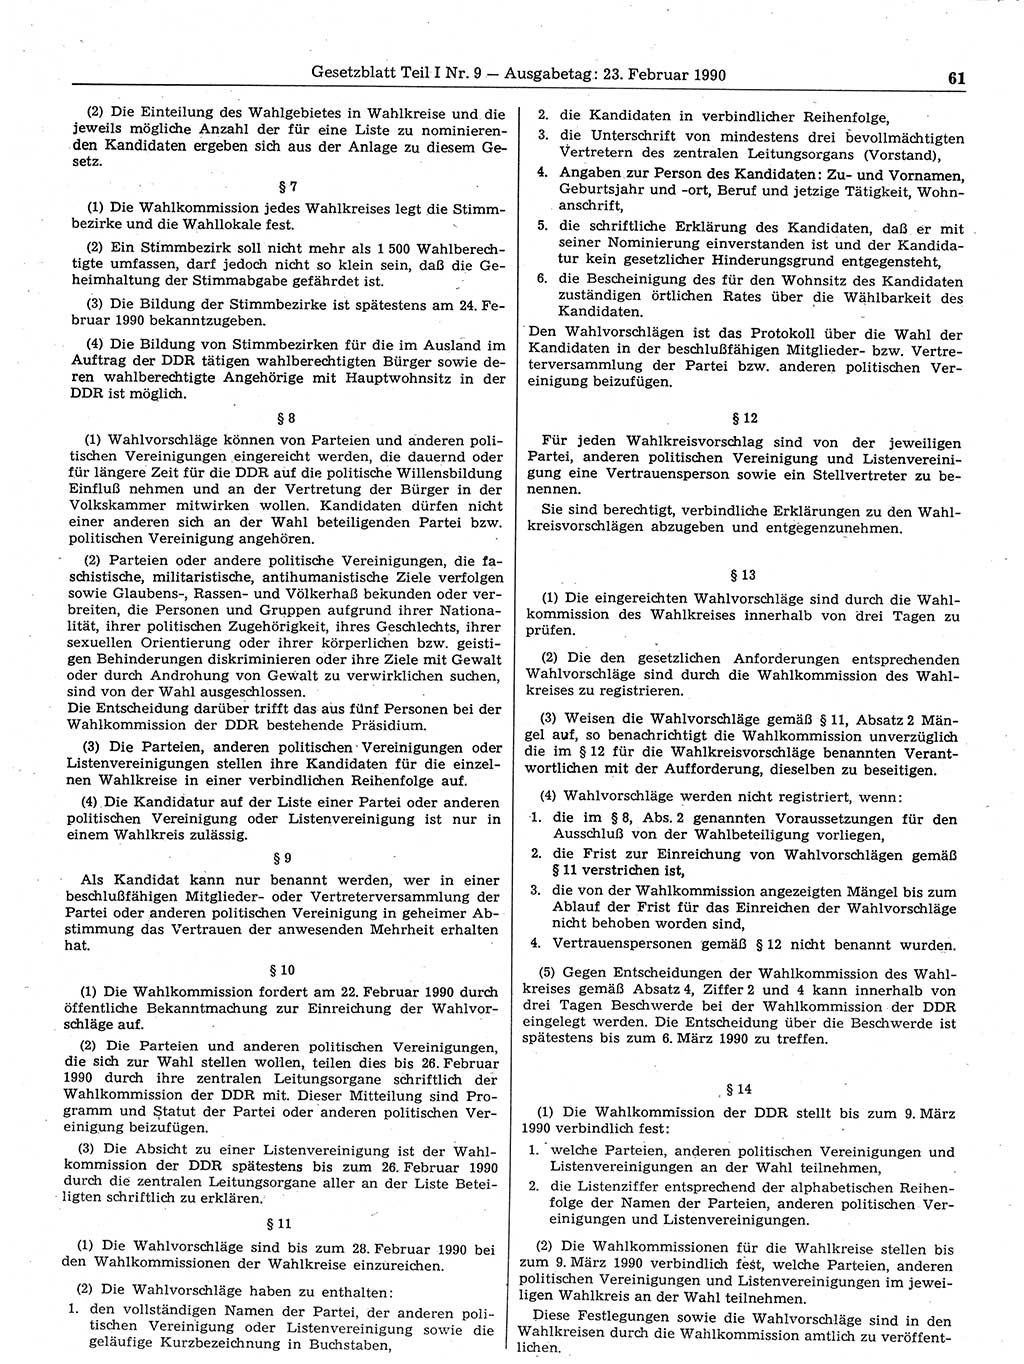 Gesetzblatt (GBl.) der Deutschen Demokratischen Republik (DDR) Teil Ⅰ 1990, Seite 61 (GBl. DDR Ⅰ 1990, S. 61)